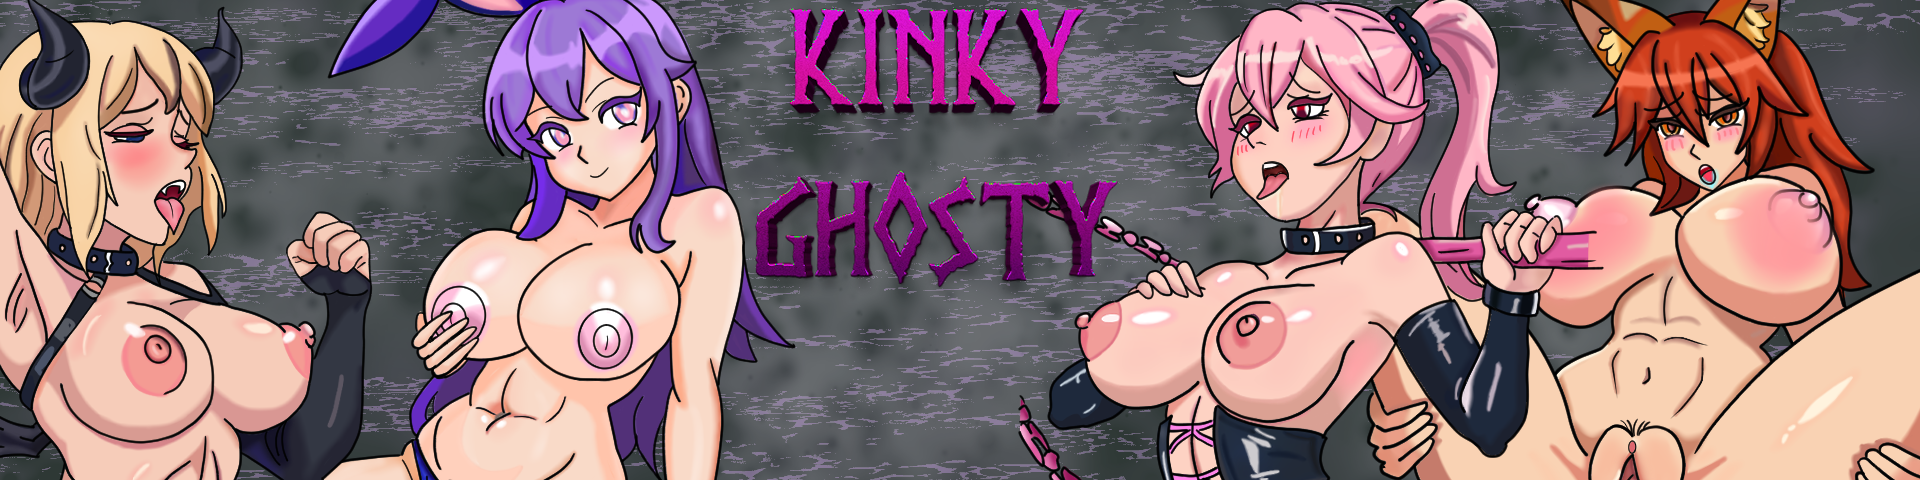 Kinky Ghosty : Parasexual Activity V 0.7